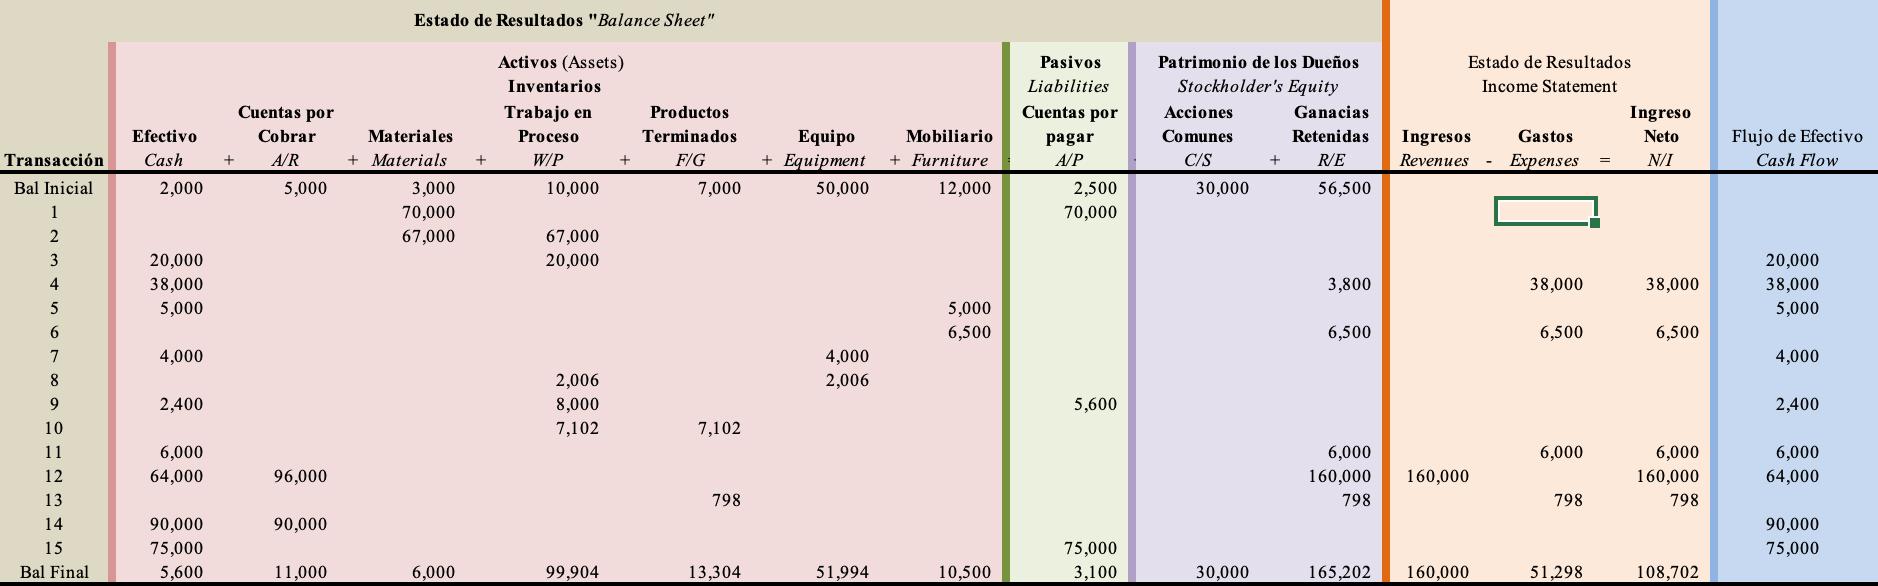 Estado de Resultados Balance Sheet Cuentas por Activos (Assets) Inventarios Trabajo en Proceso W/P 10,000 Patrimonio de los